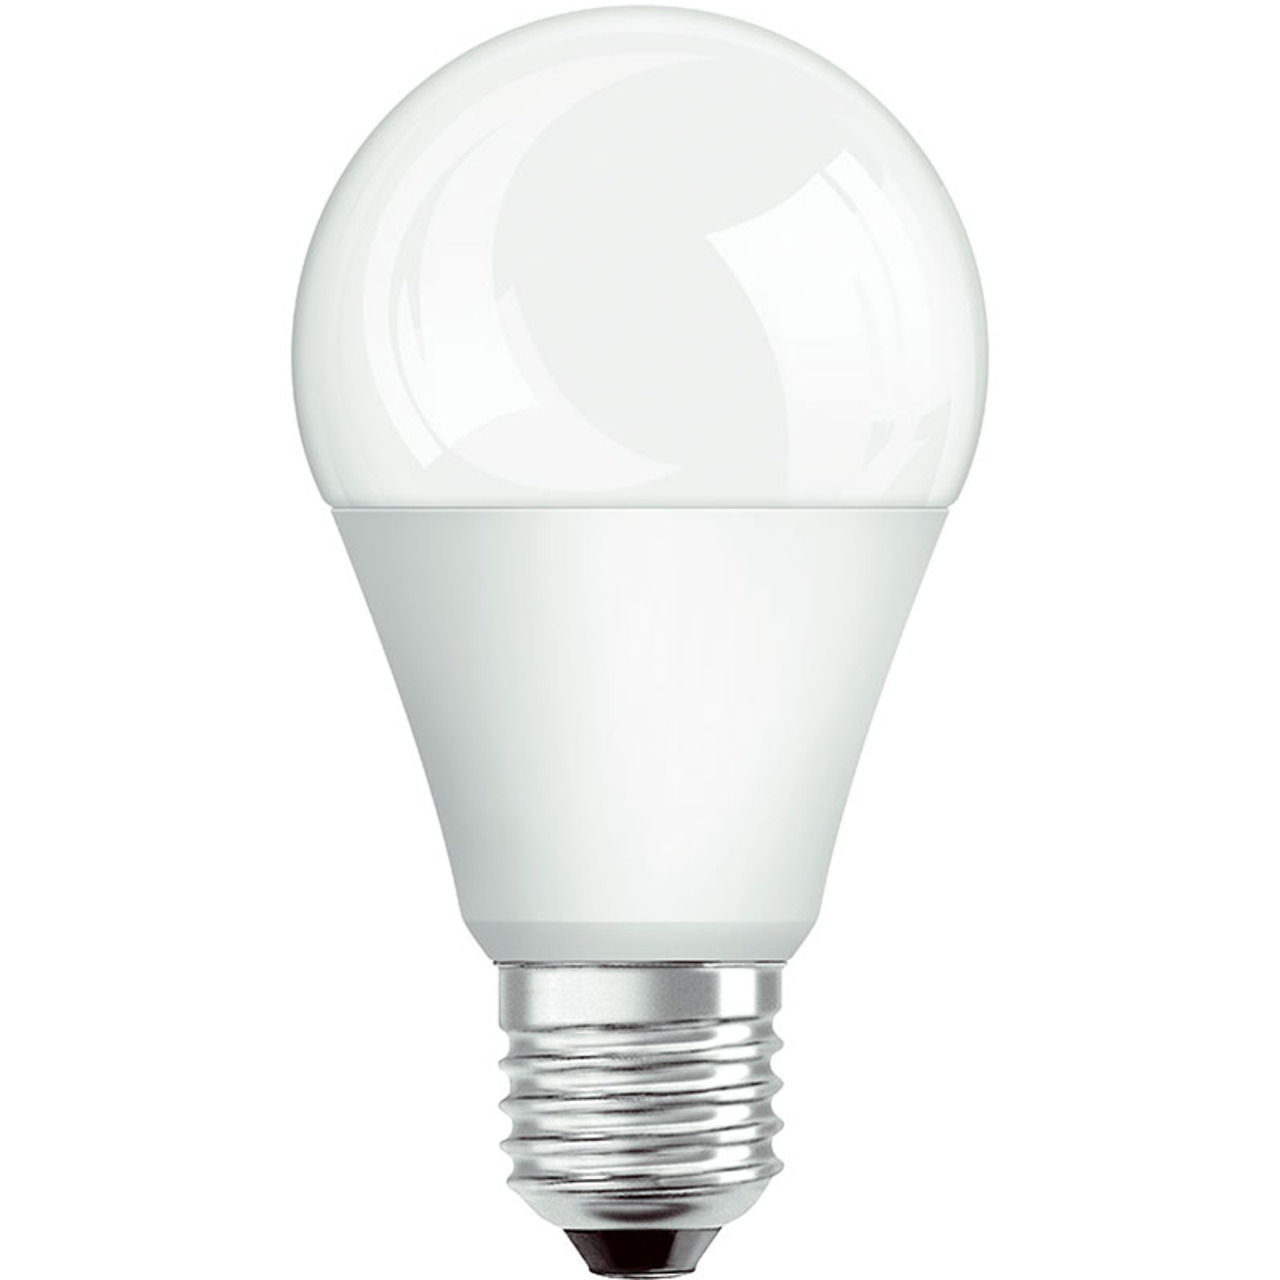 OSRAM LED SUPERSTAR 13-W-LED-Lampe E27- warmweiss- dimmbar unter Beleuchtung